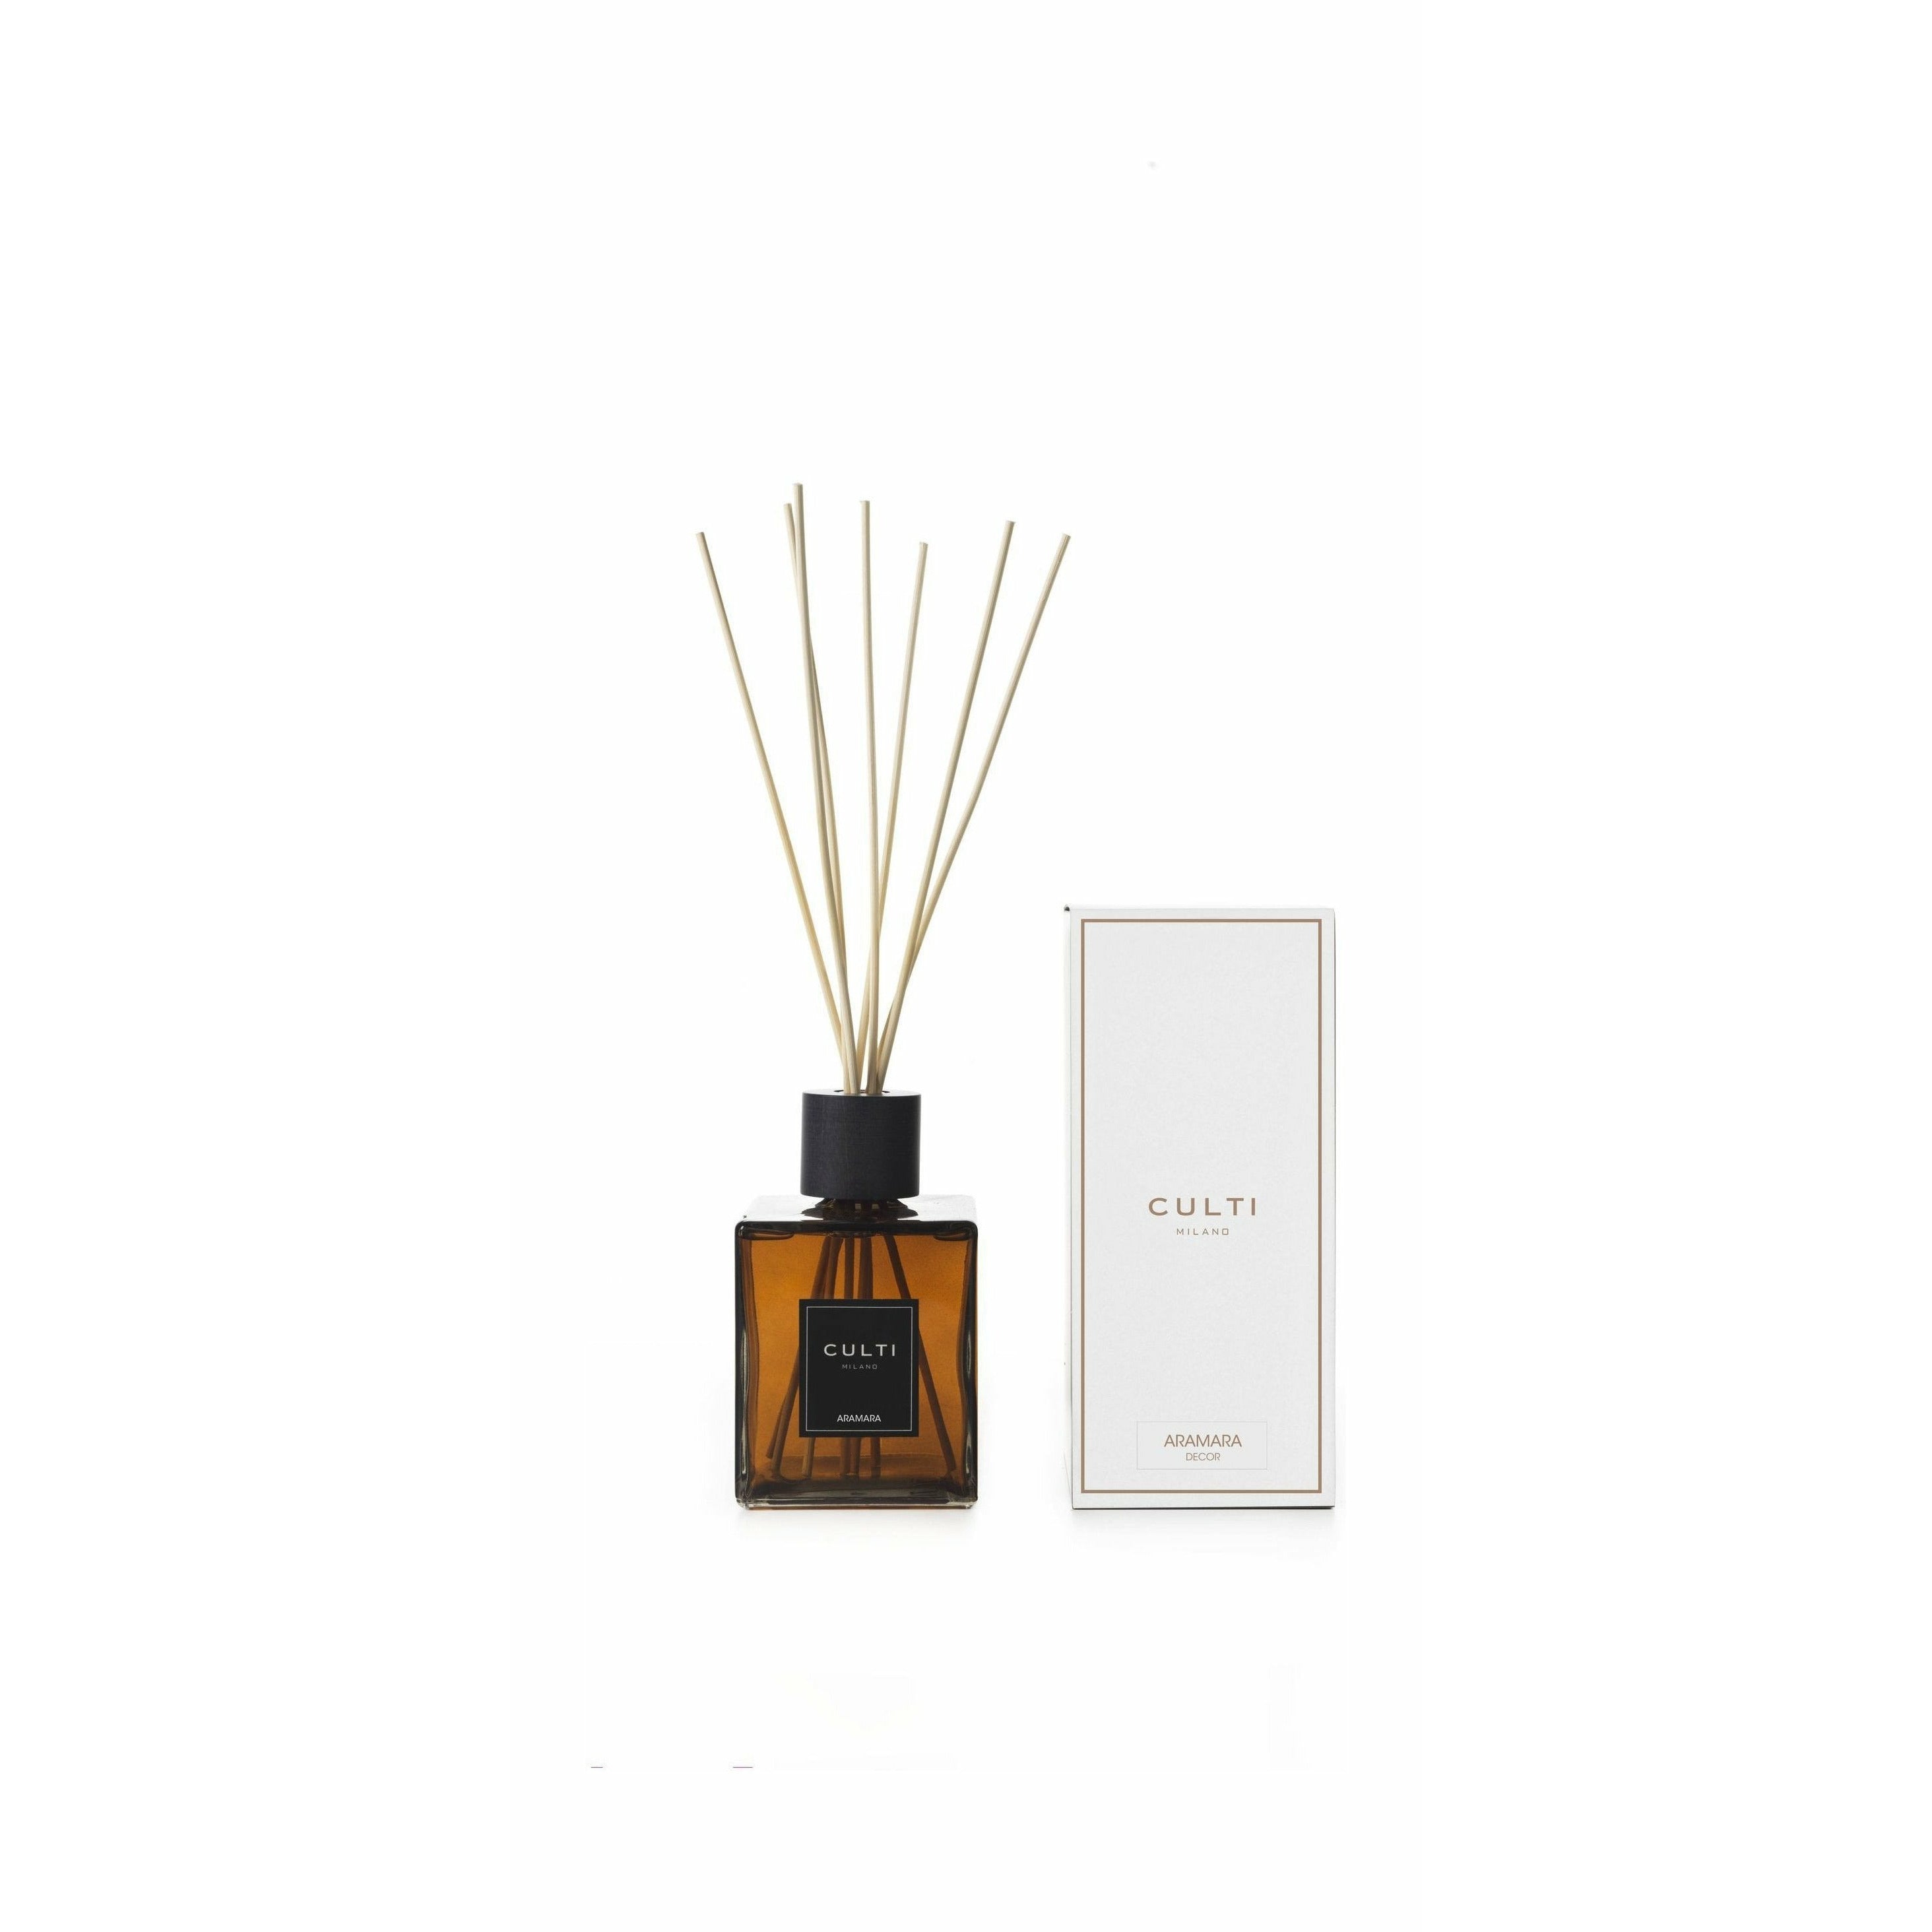 Culti Milano Decor Classic Fragrance Diffuser Aramara, 1 L